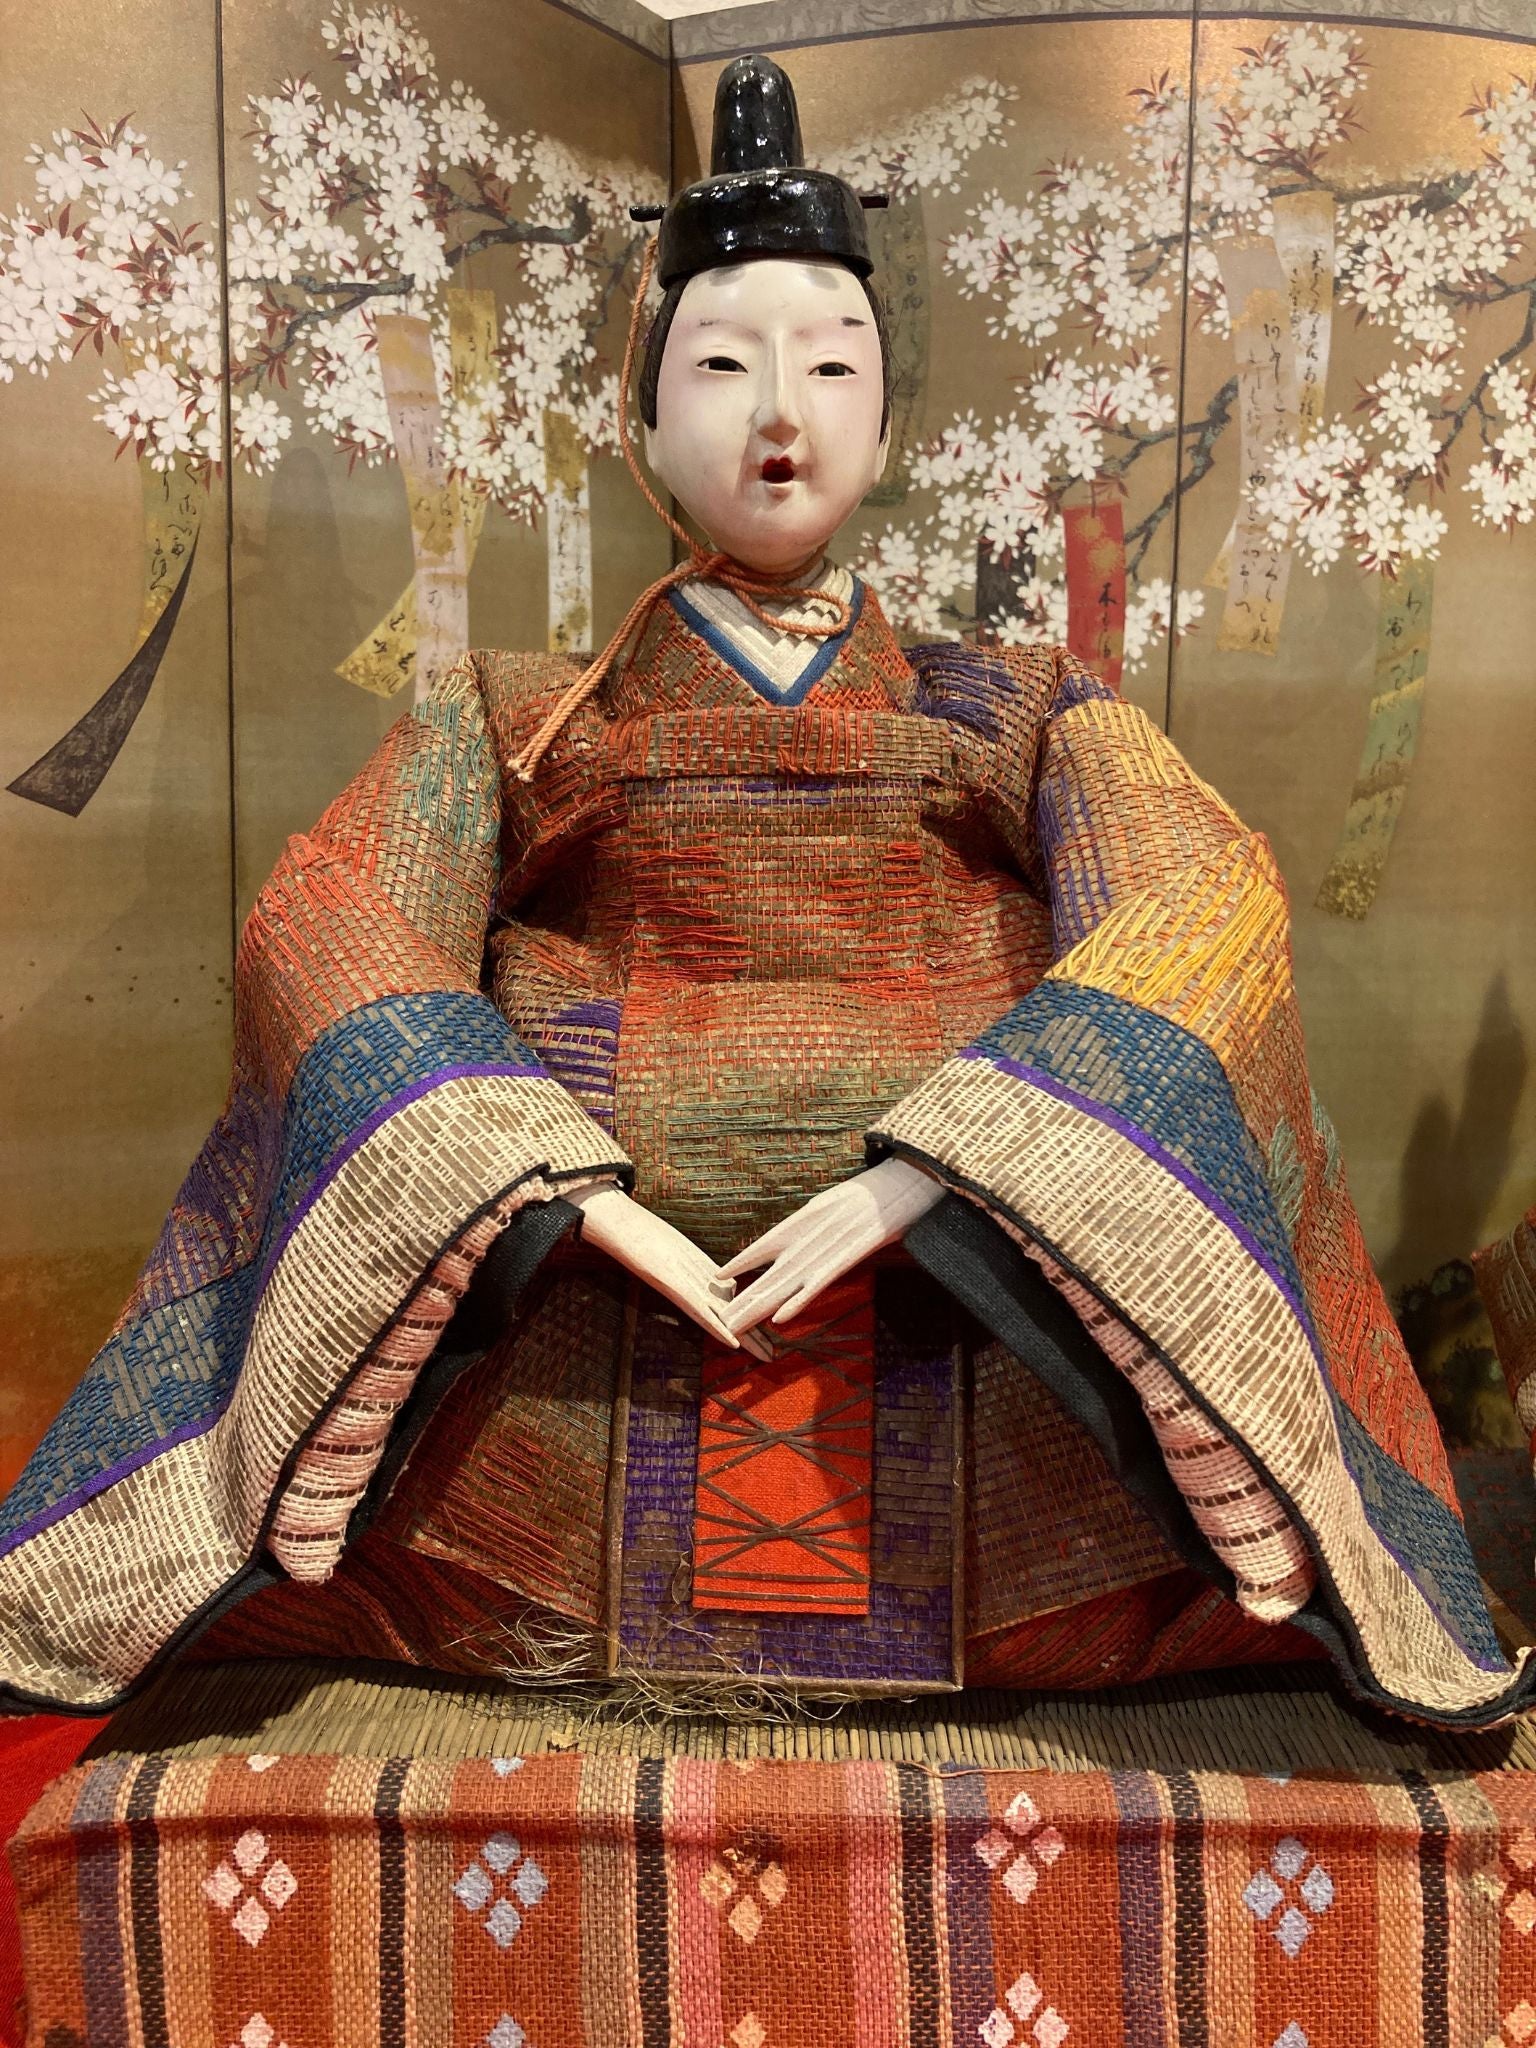 poupées japonaises pour la fête de Hina Matsuri (la fête des filles), représentant l'Empereur et l'Impératrice  empereur